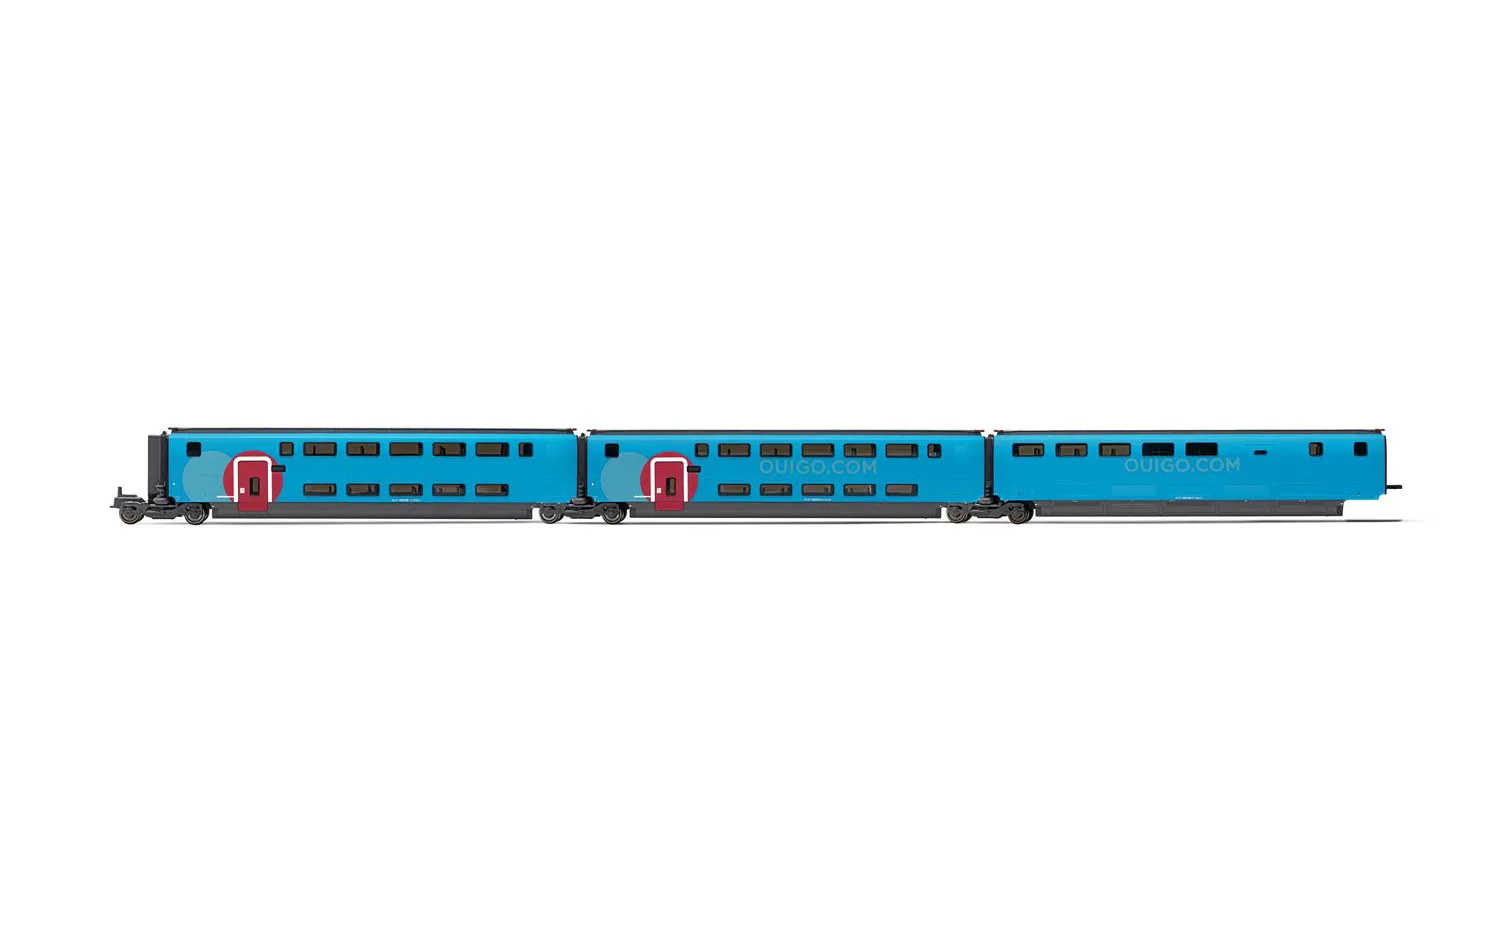 SNCF, coffret supplémentaire de 3 voitures, TGV Duplex Ouigo, composé de 2 x voitures de ex 1ére classe et 1 x voiture bar, ép. VI